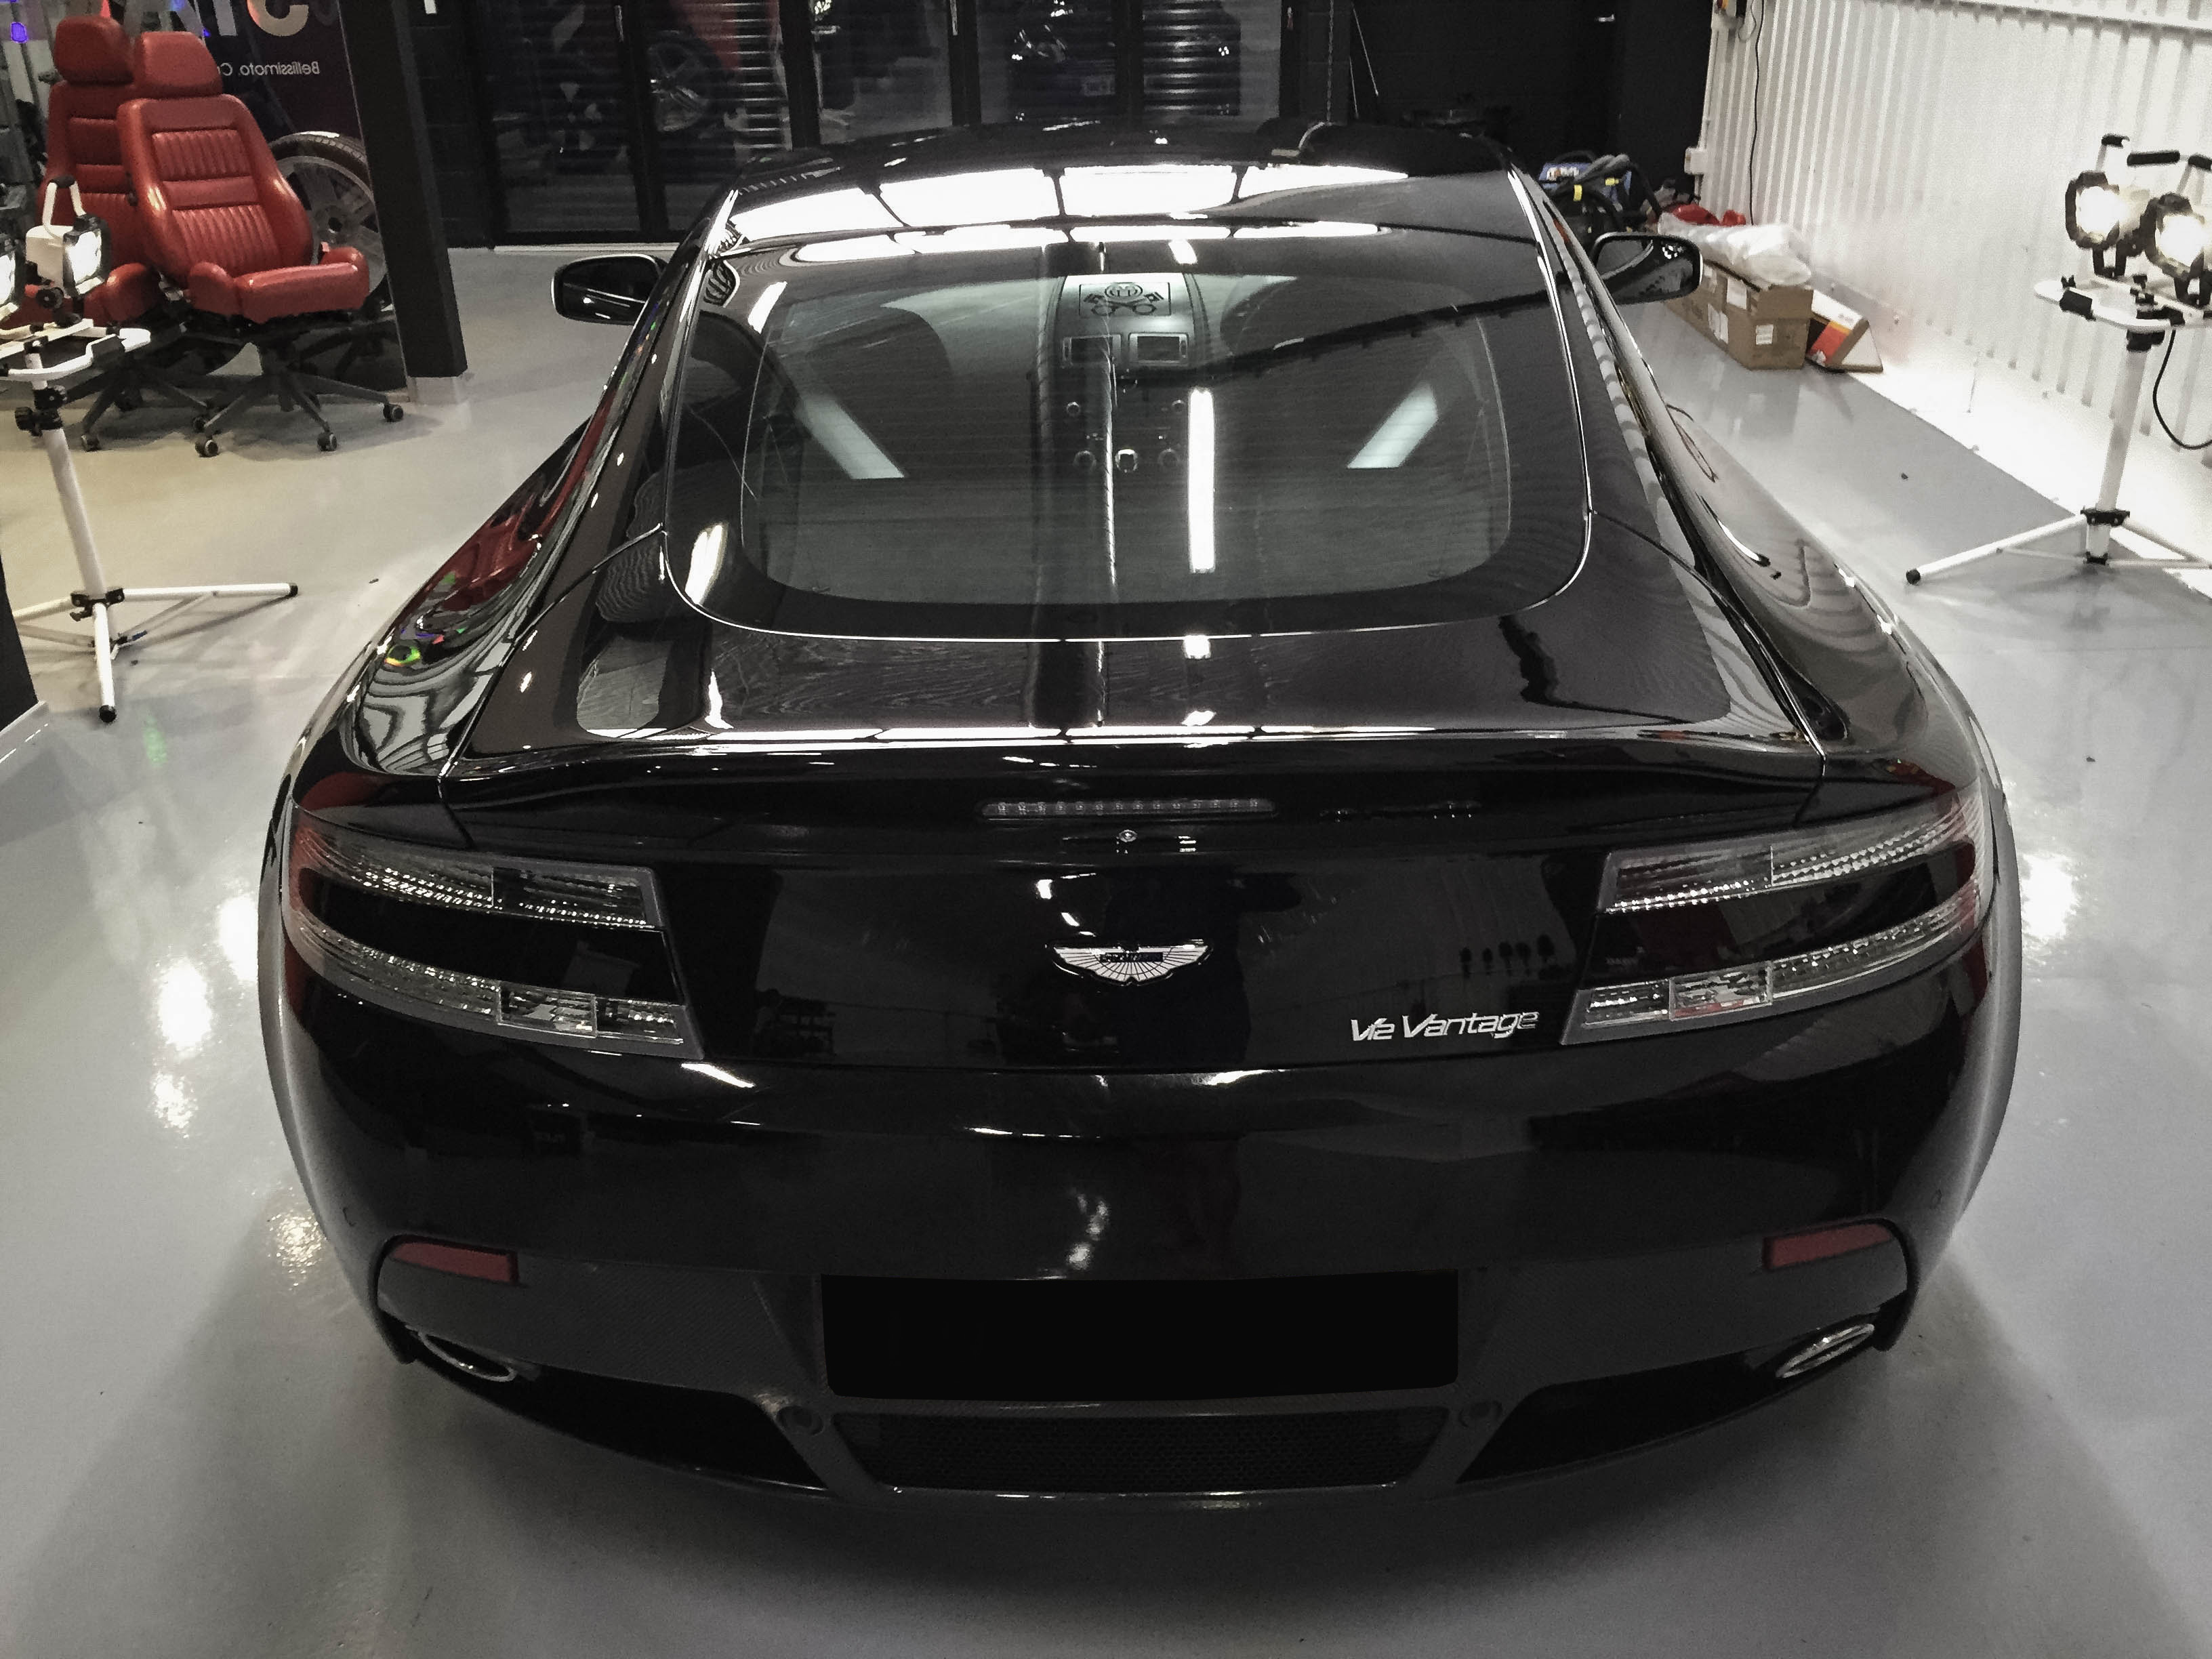 Aston Martin Vantage – Rear